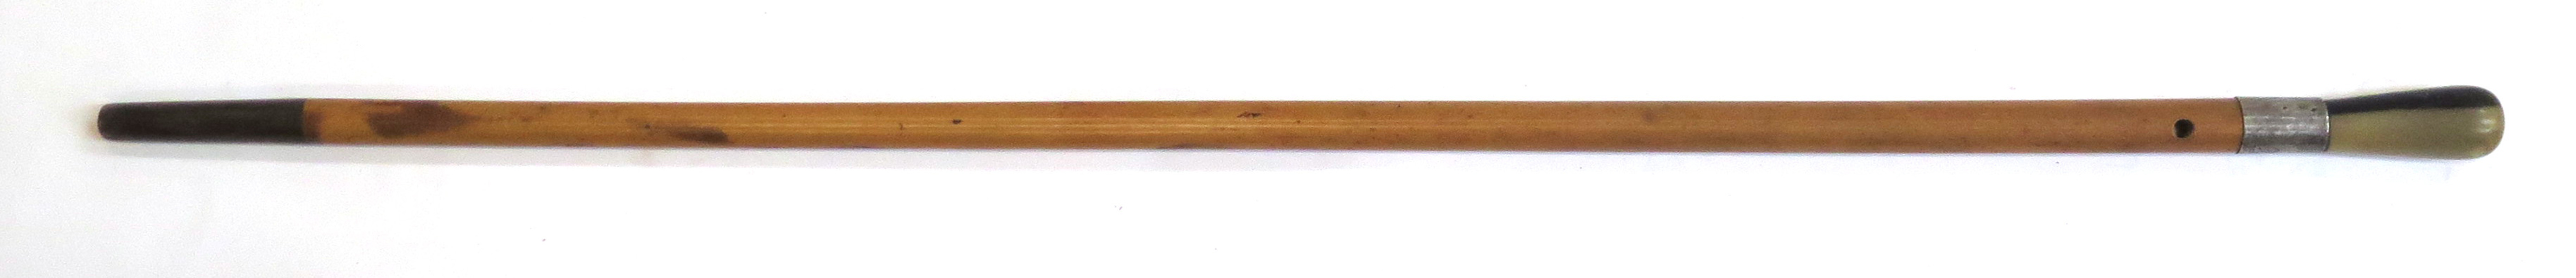 Käpp, bambu och horn med silverbeslag, 1900-talets 1 hälft, _13790a_lg.jpeg